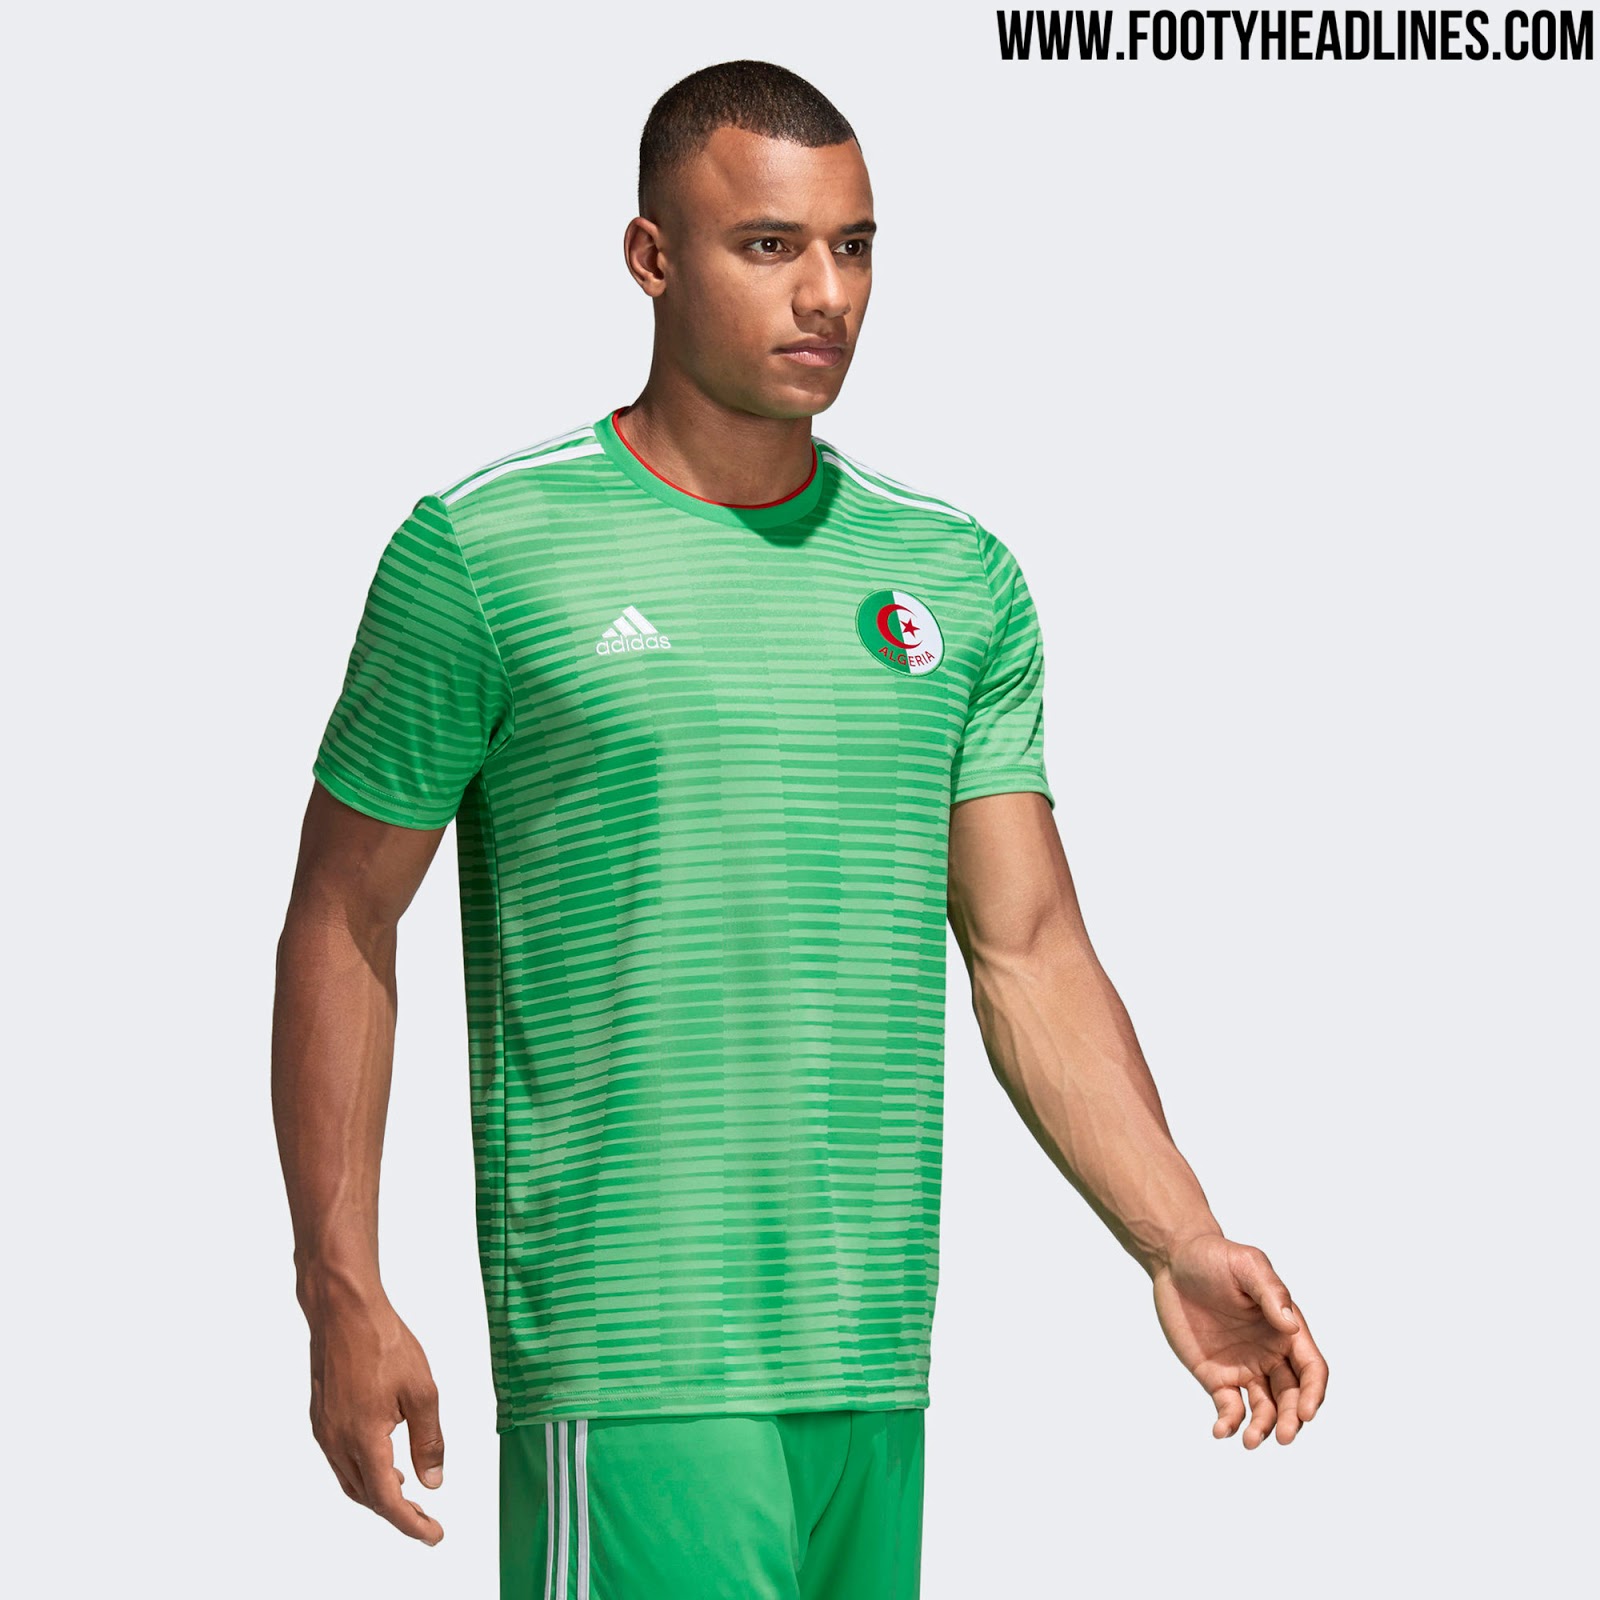 Adidas Algeria 2018 Home Kit Released + Away Kit Leaked - Footy Headlines